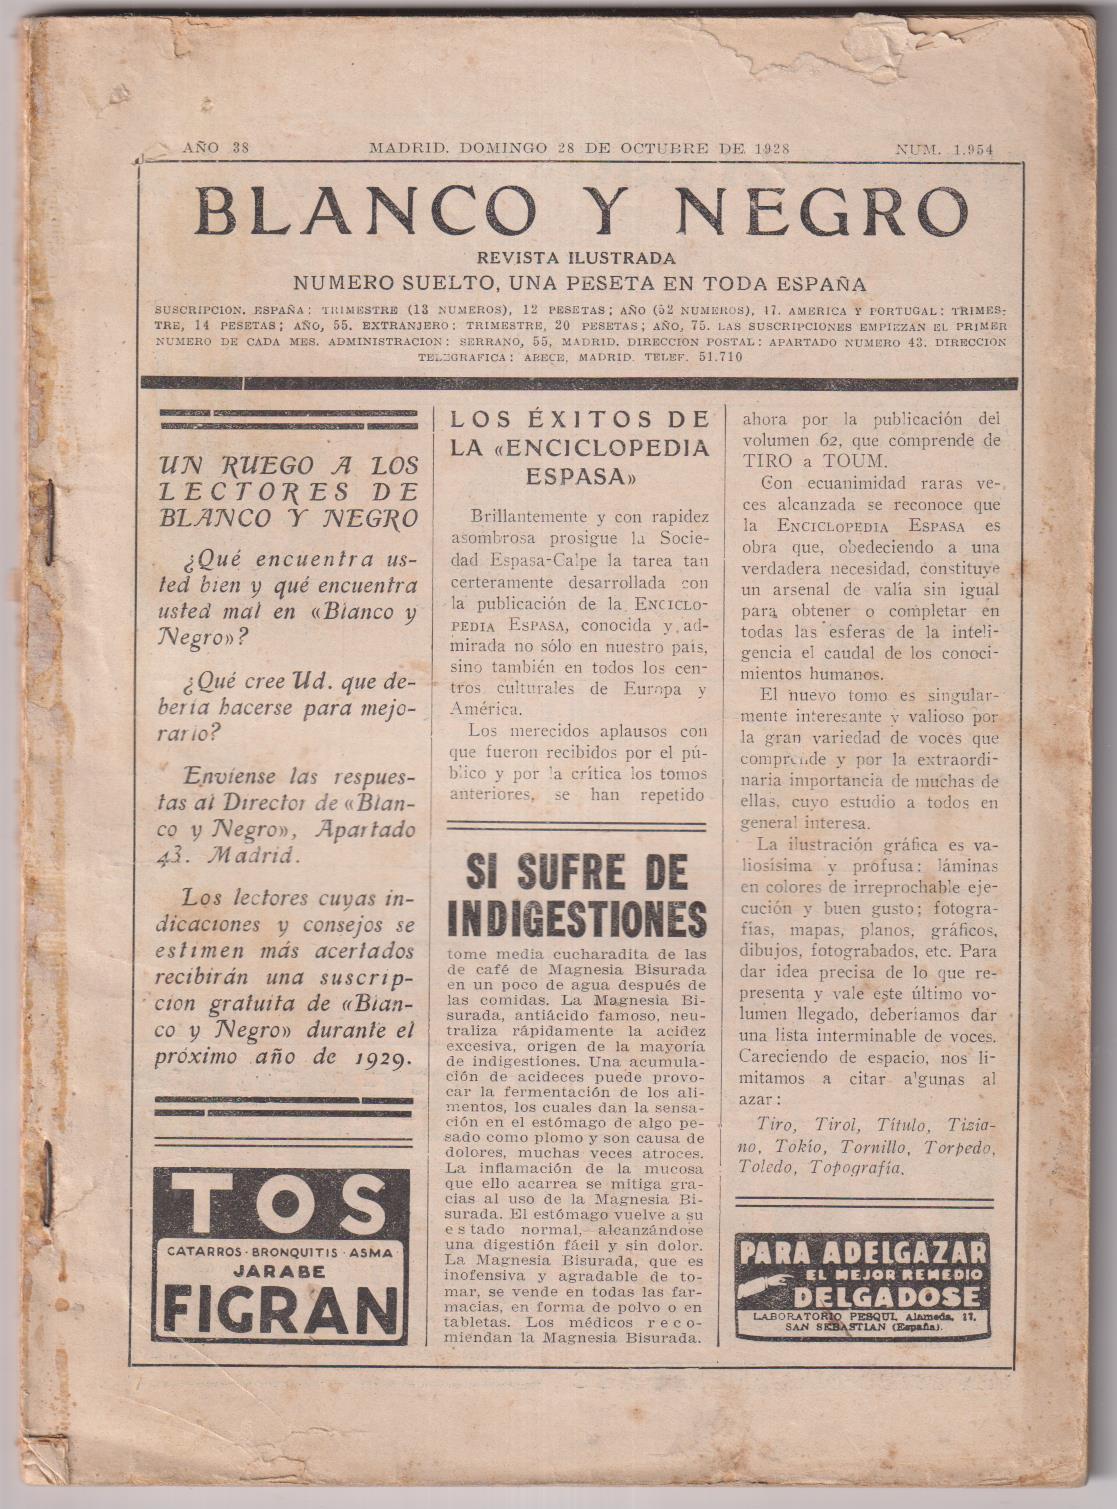 Blanco y Negro nº 1954. Madrid 28 de octubre de 1928